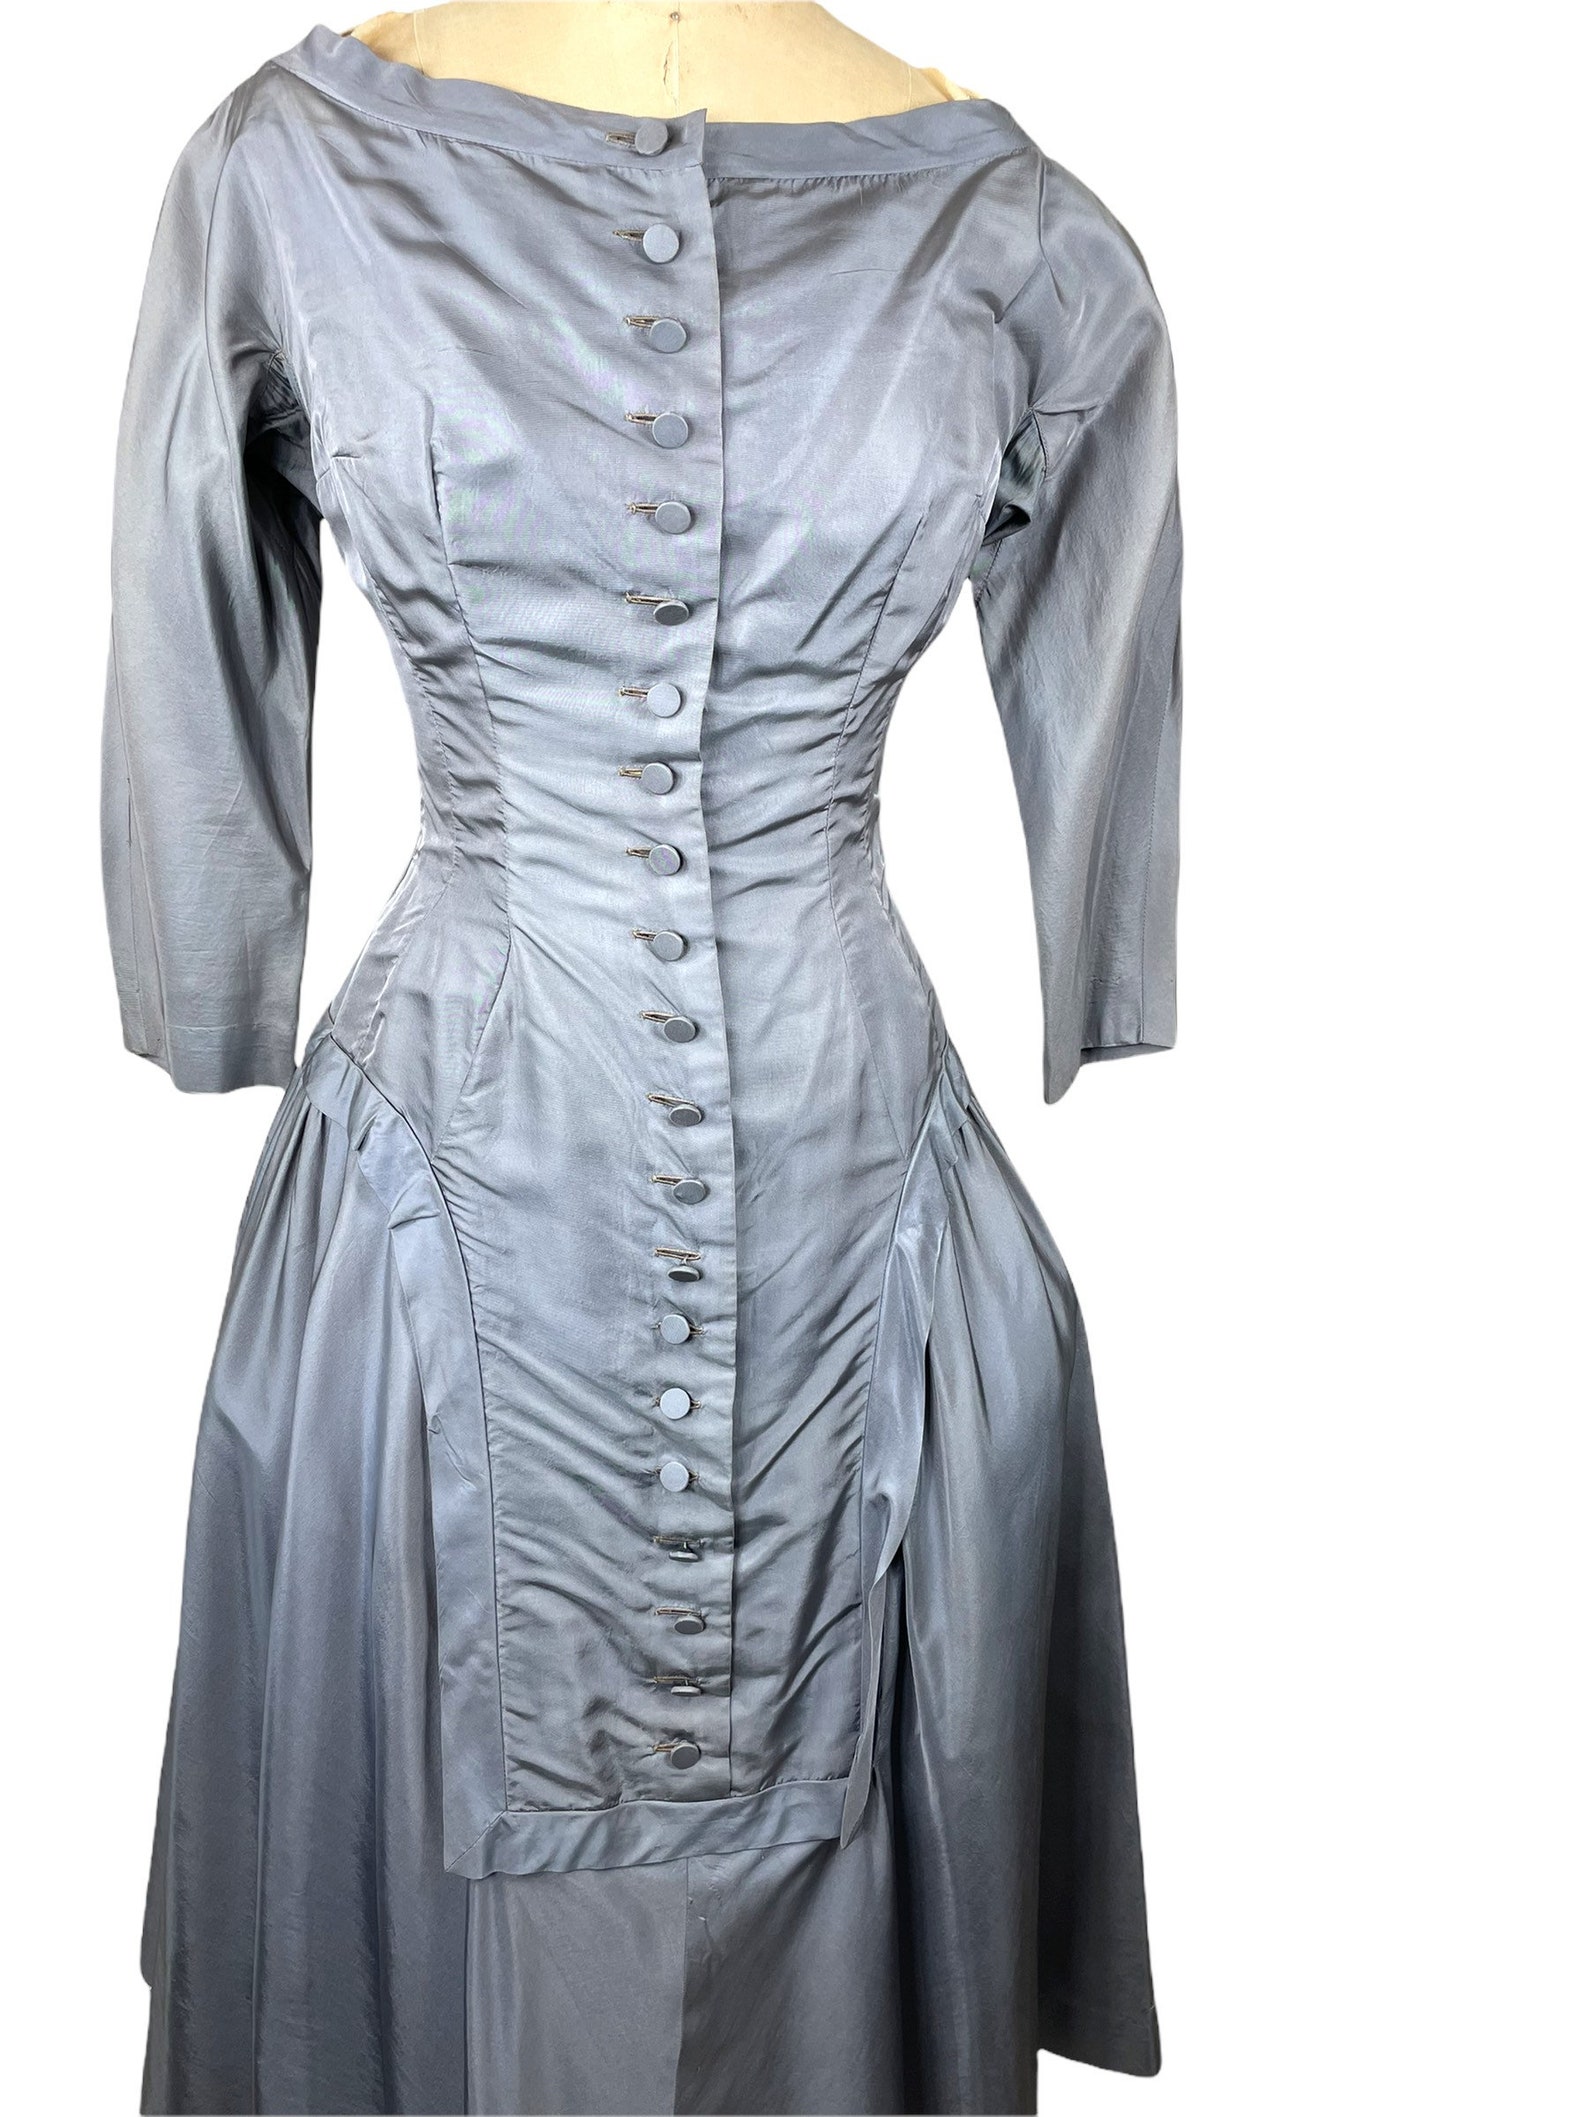 1950s Gray Silk Taffeta Evening Dress by Perrulo B-36 W-26 - Etsy